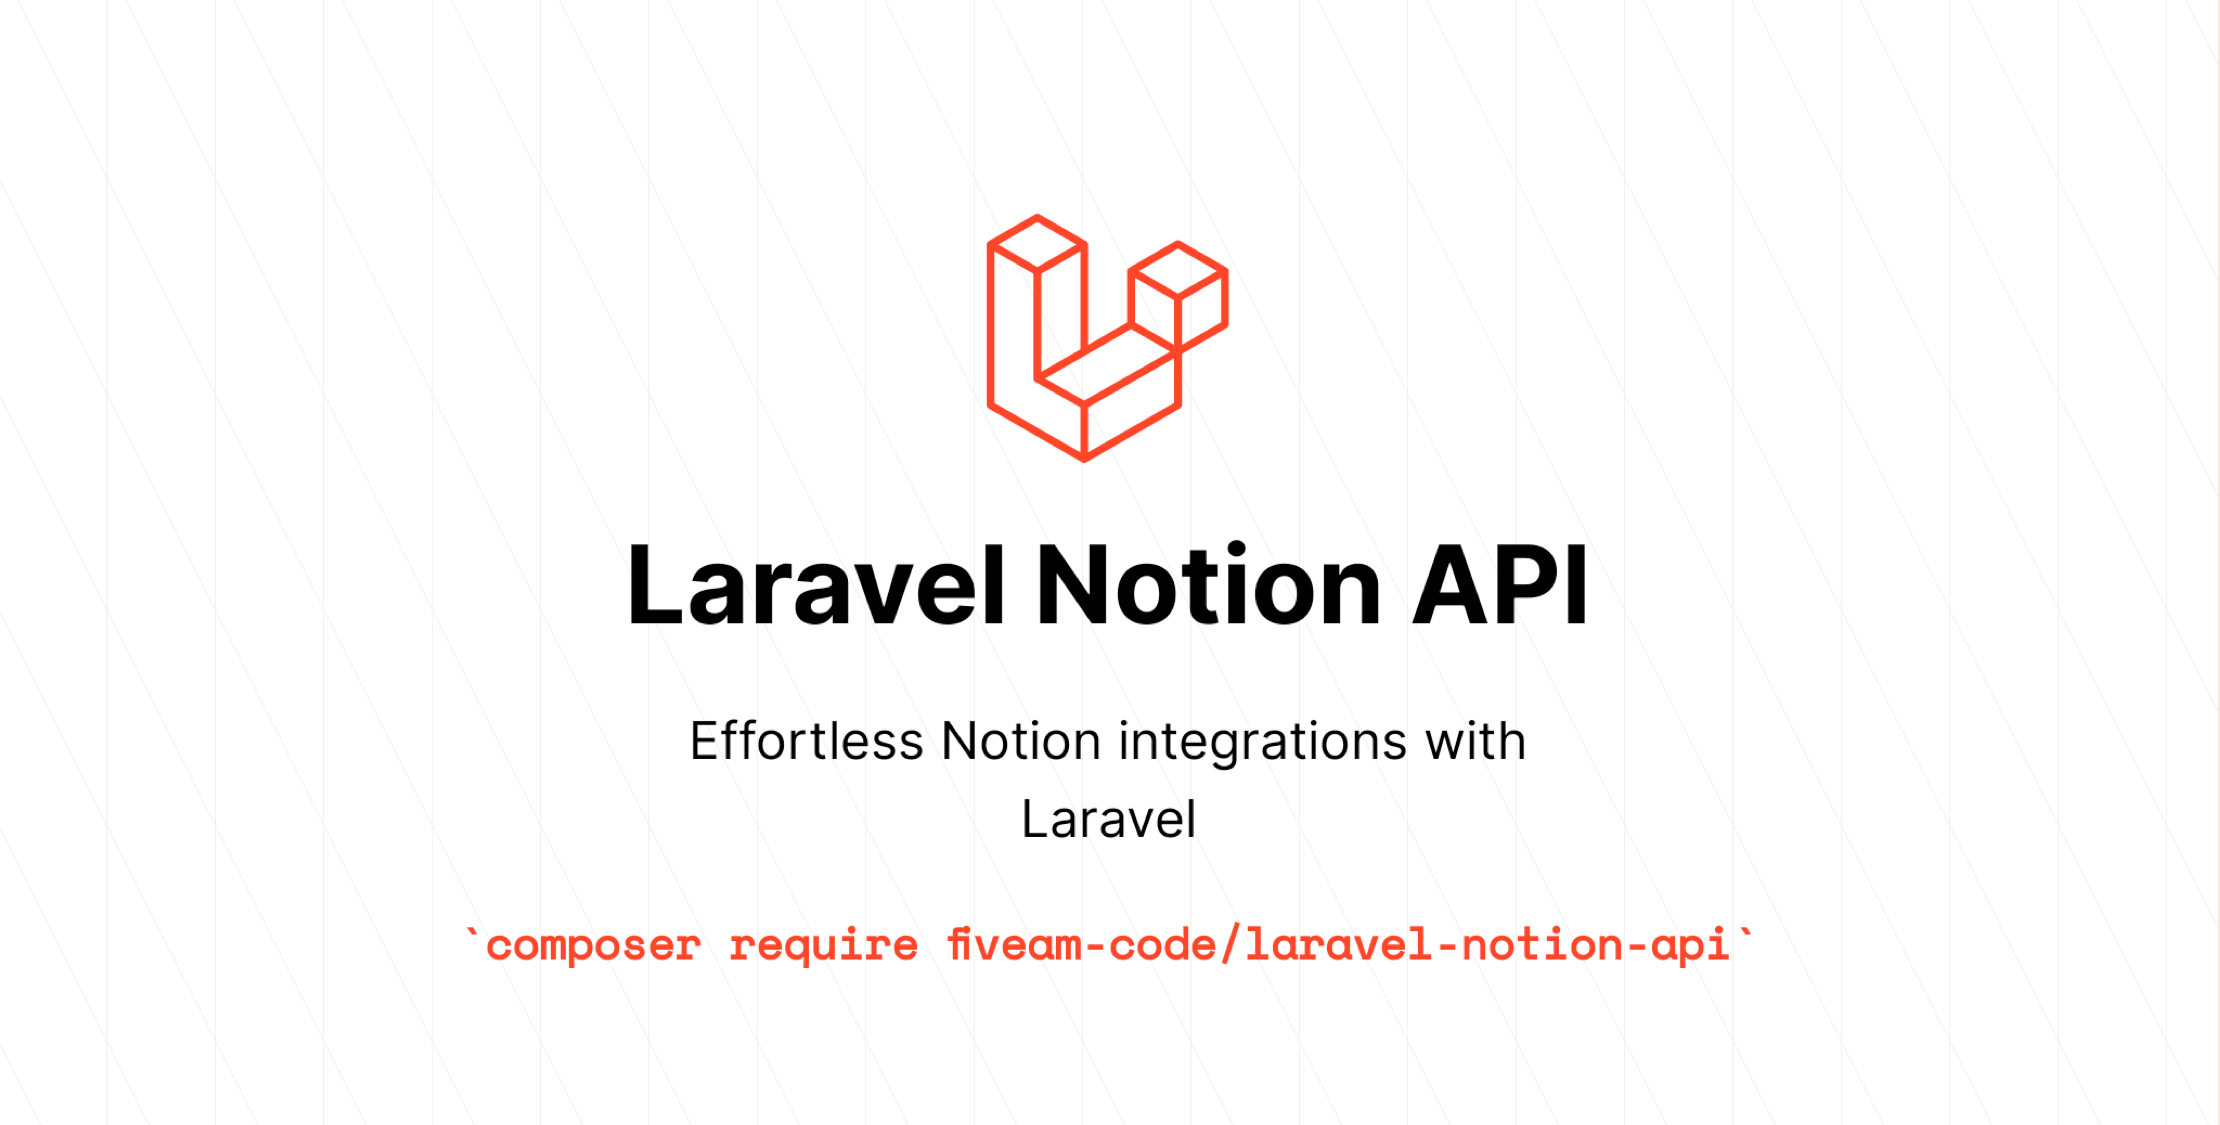 Notion API for Laravel image